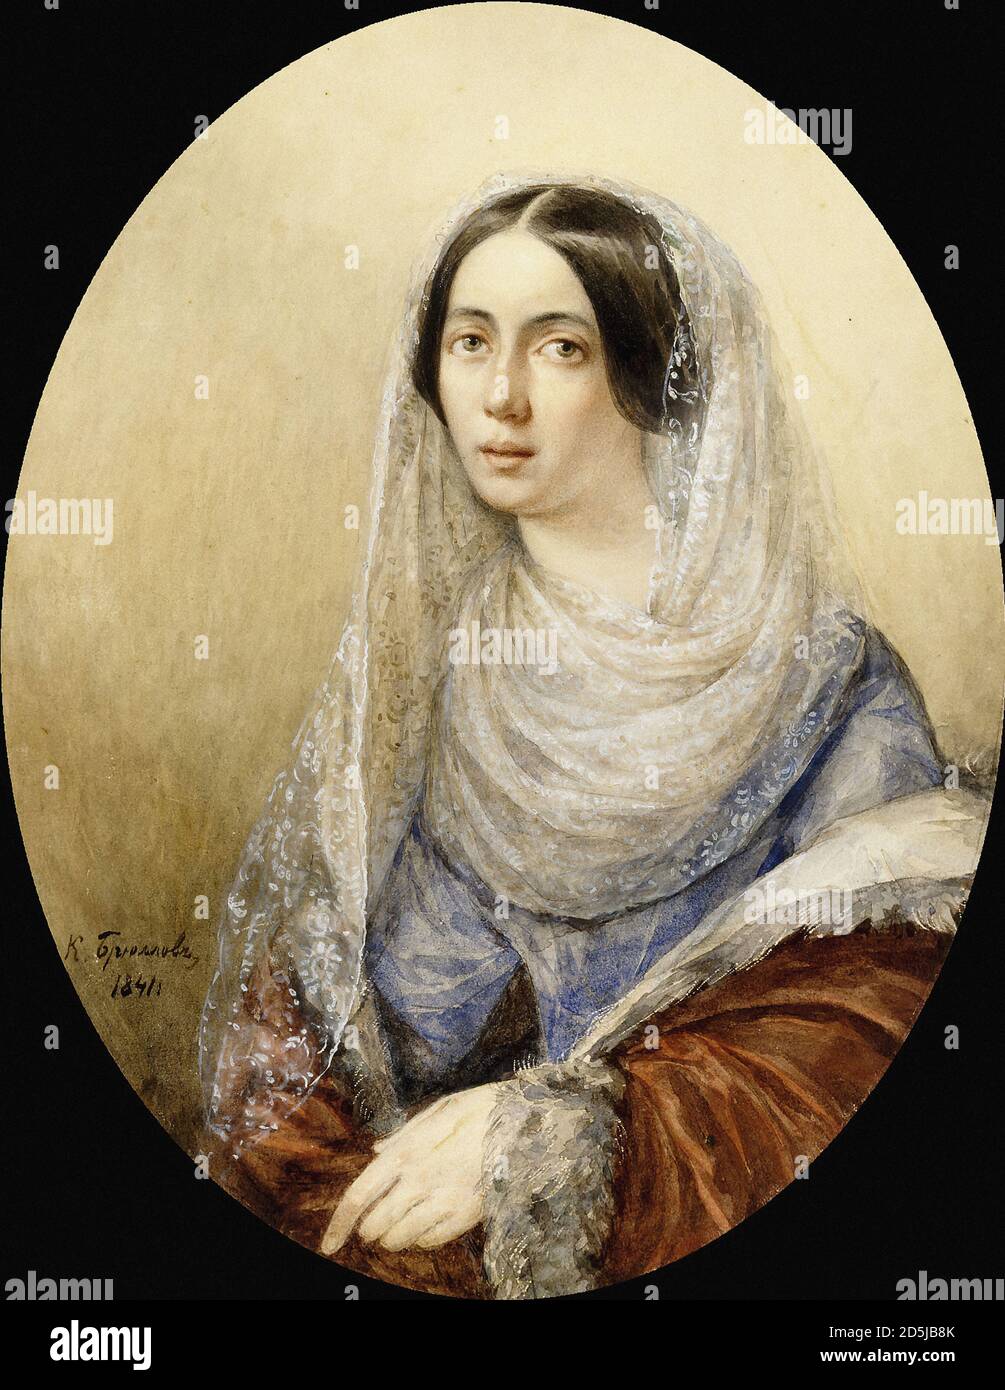 Briullov Karl - Ritratto di una donna - Scuola Russa - 19 ° secolo Foto Stock